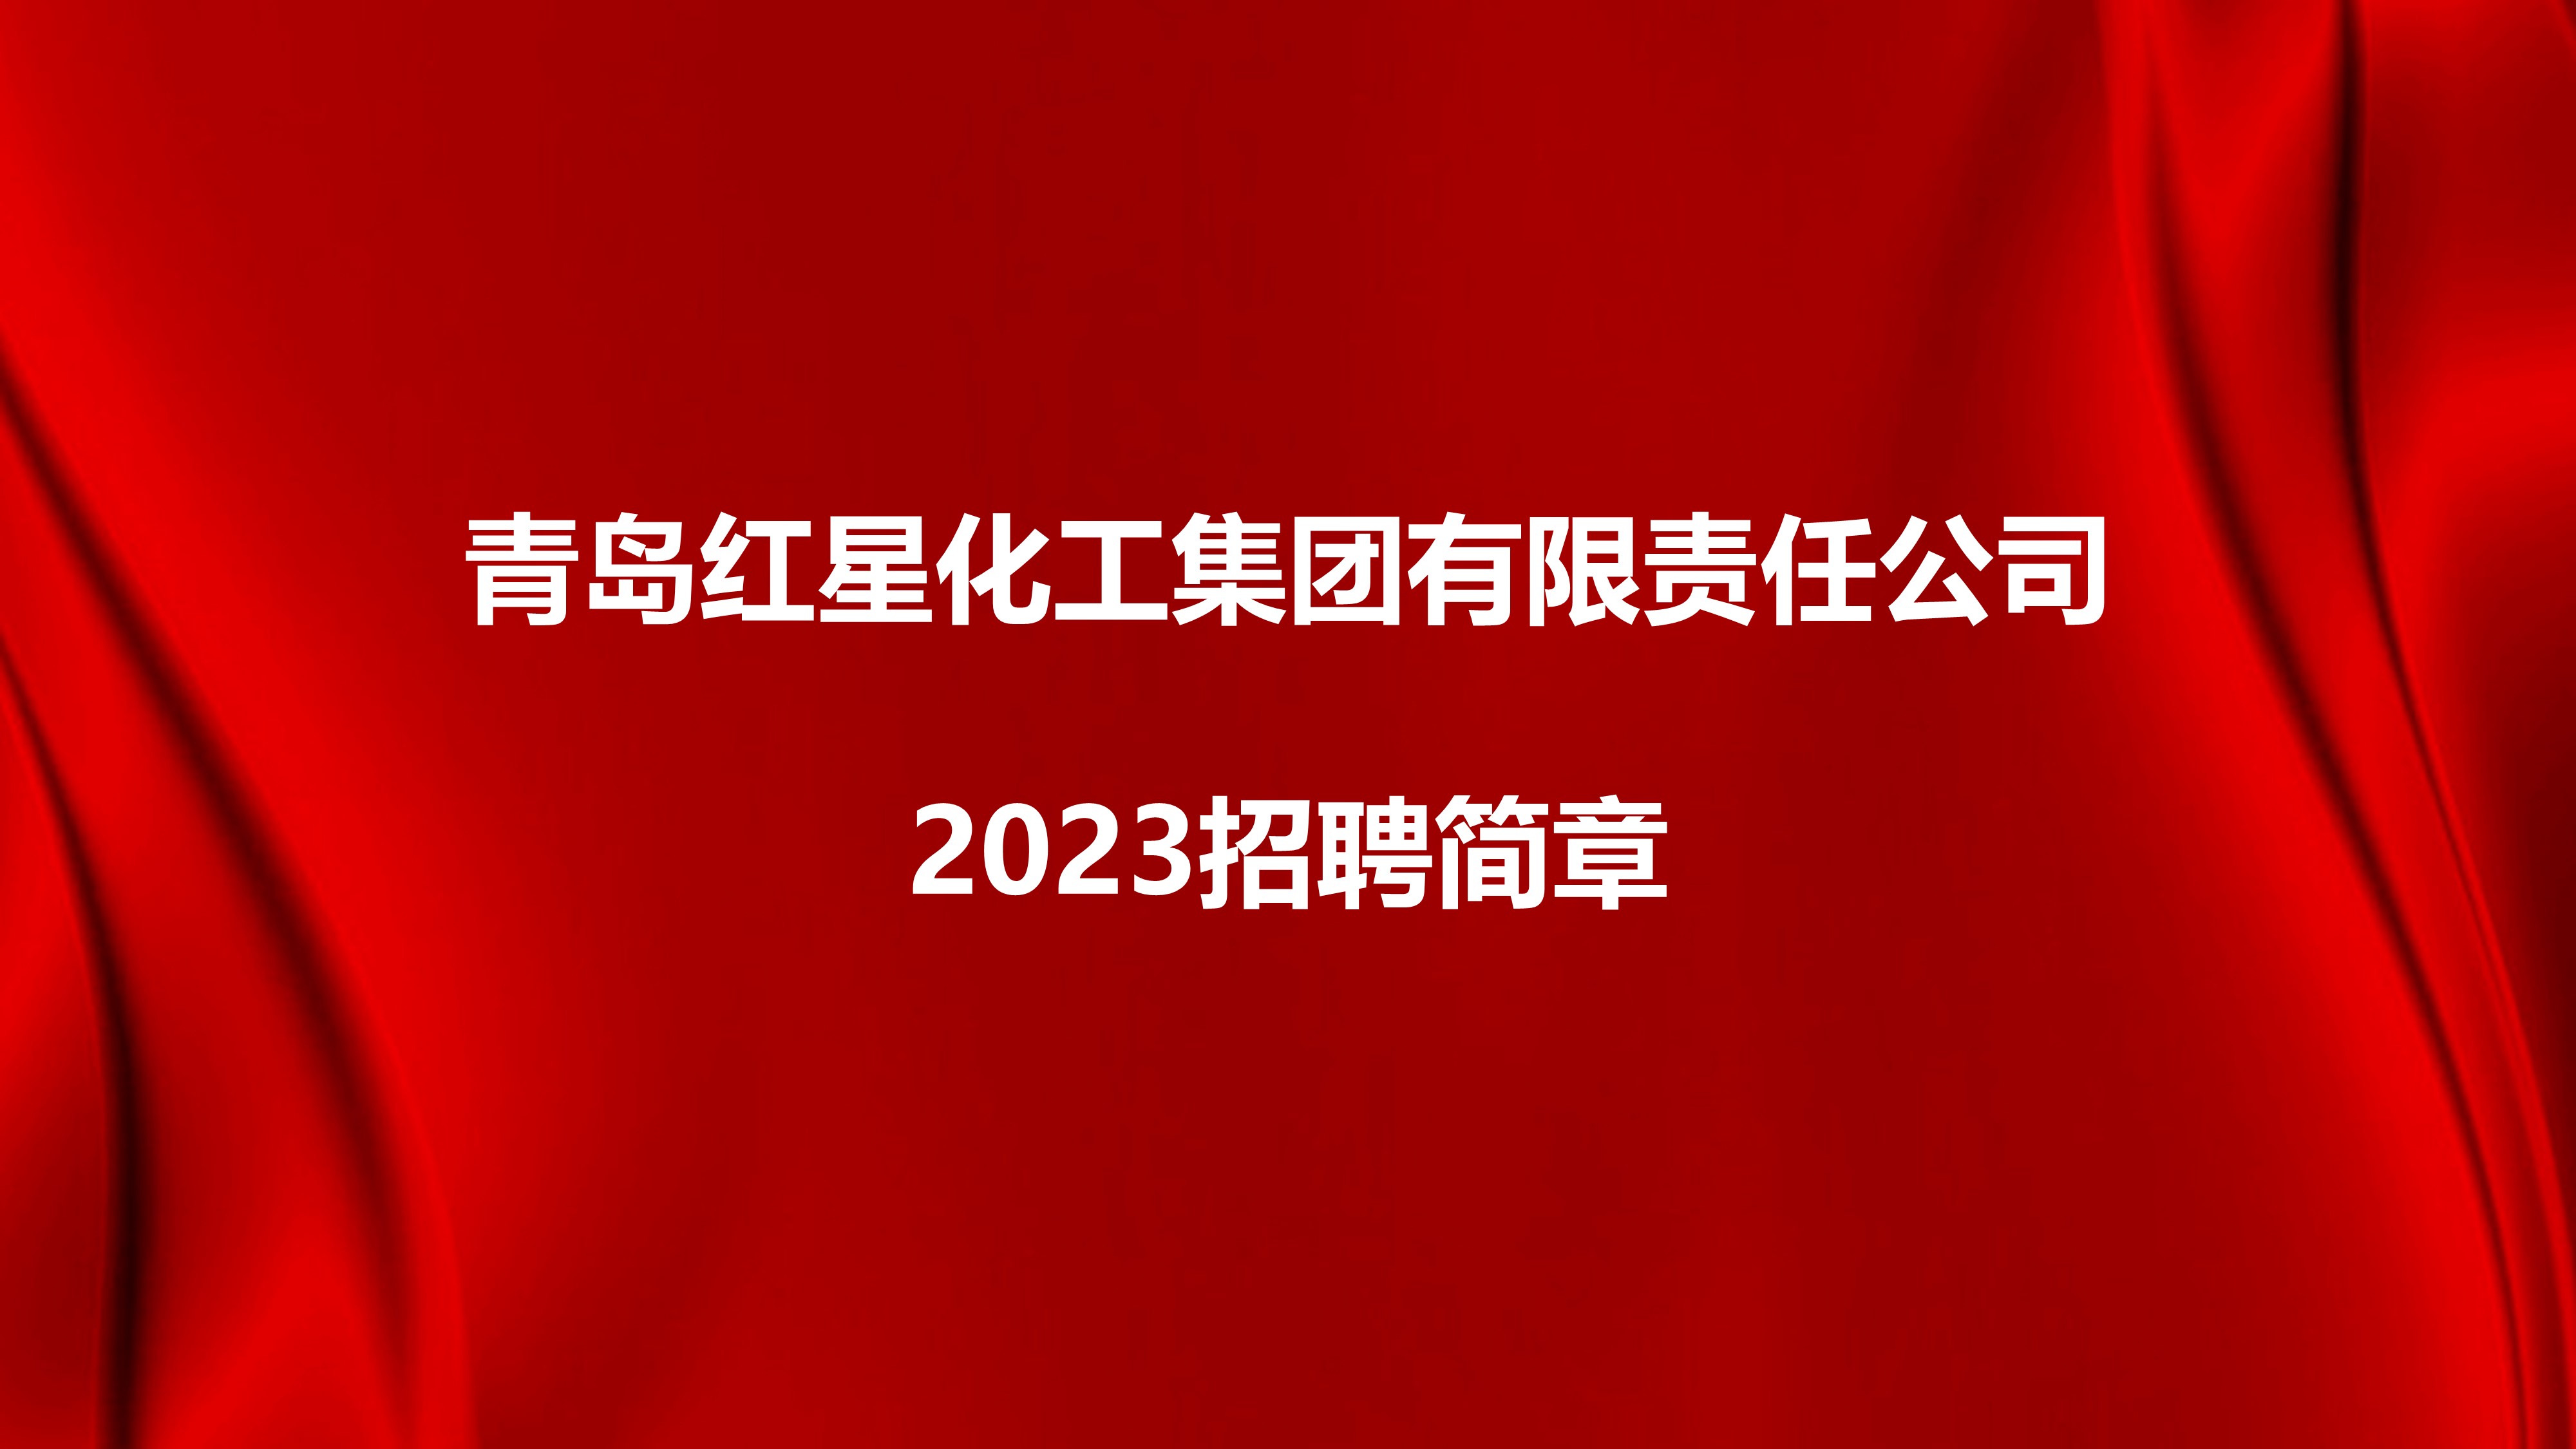 青岛红星化工集团有限责任公司2023招聘简章